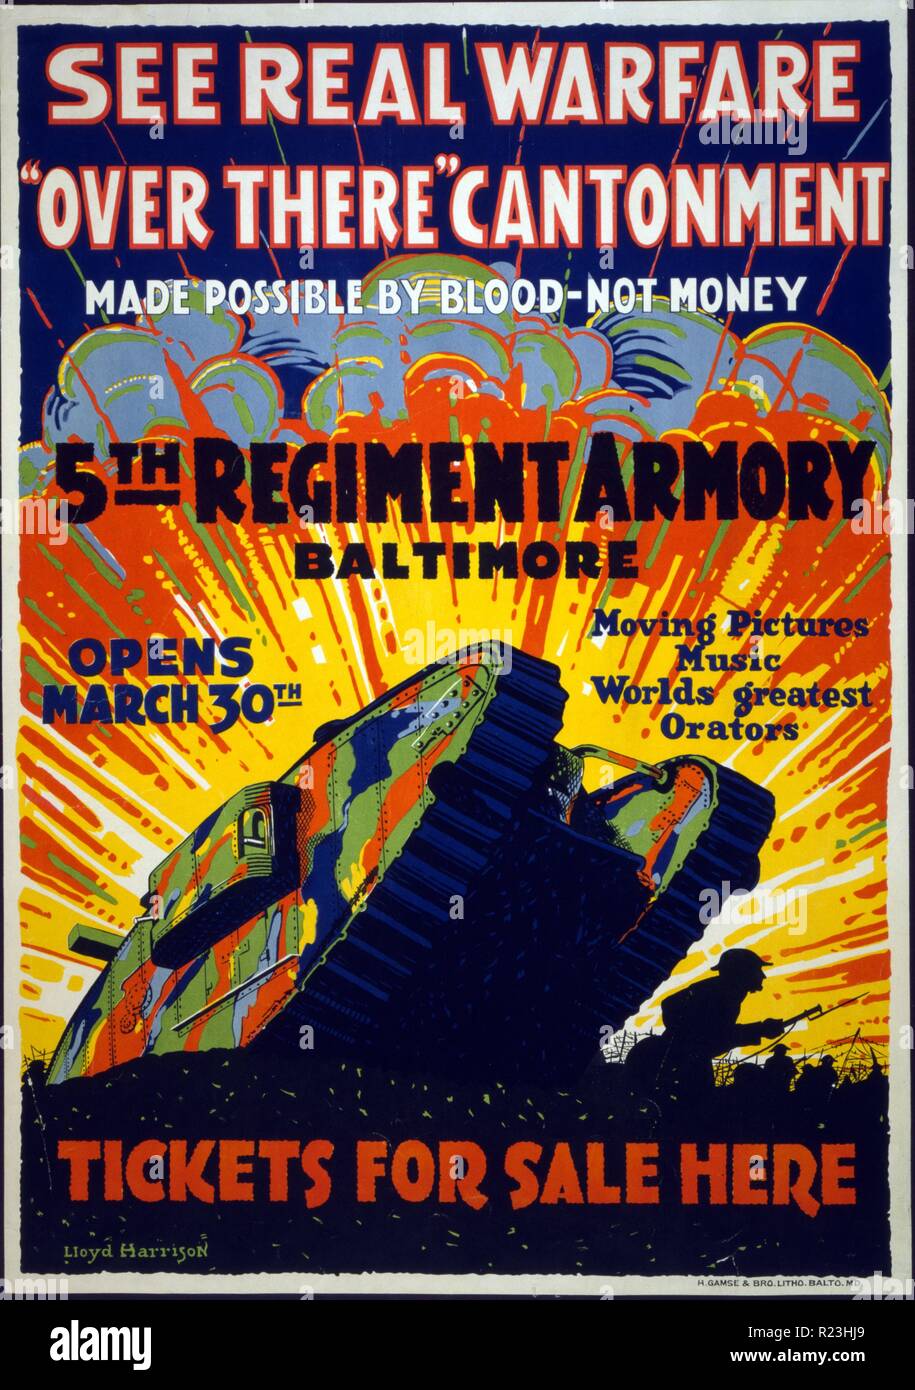 Siehe real Warfare - "drüben" cantonment - möglich durch Blut - nicht Geld 5. Regiment Zeughaus, Baltimore - Karten für den Verkauf finden Sie hier. Poster mit einem Tank in einen Graben klettern. Stockfoto